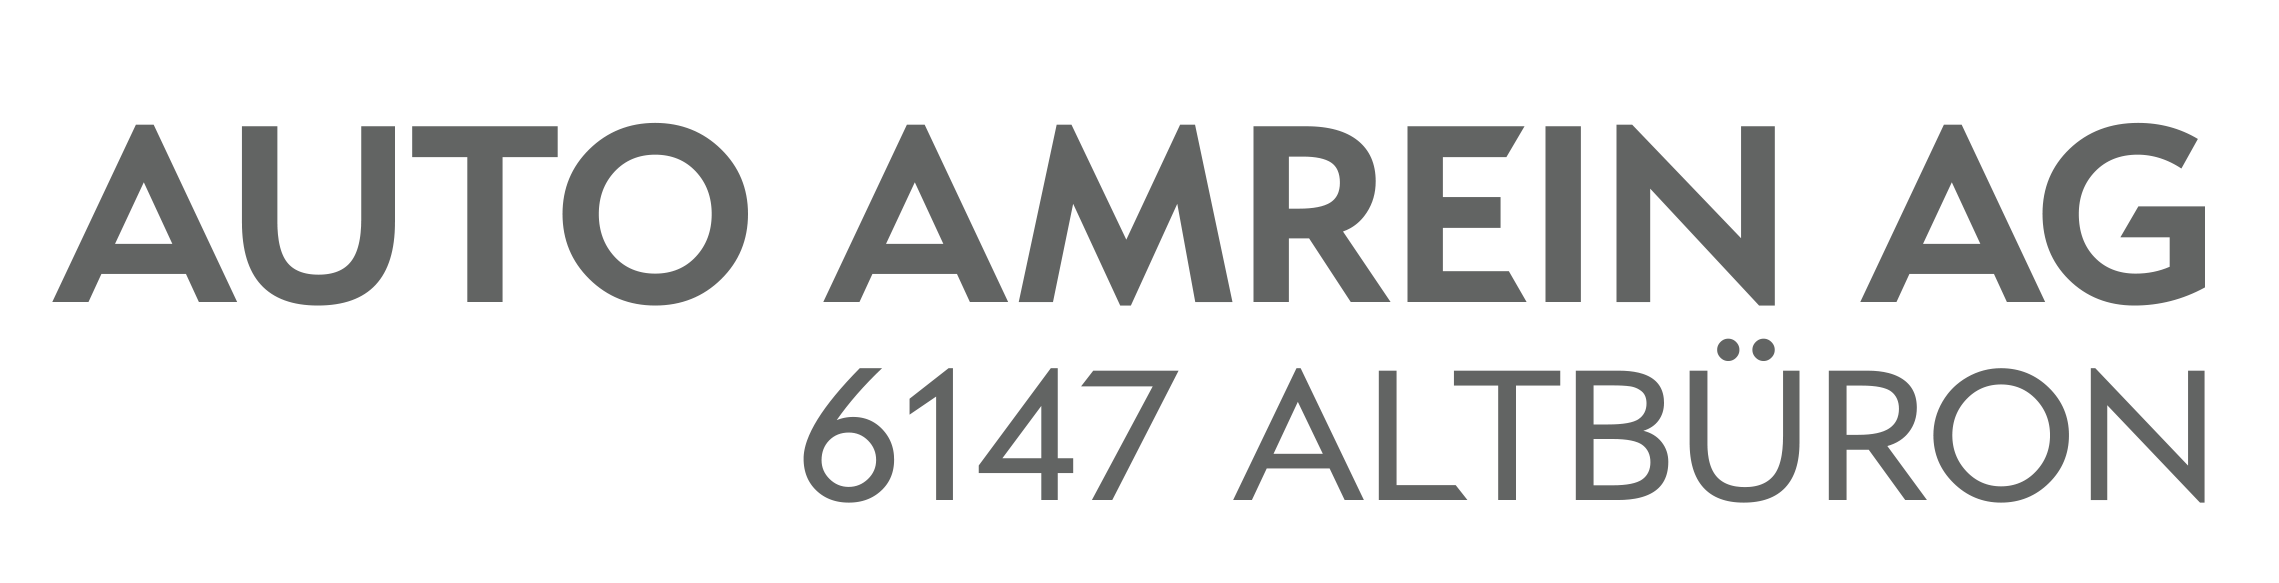 Auto Amrein AG logo